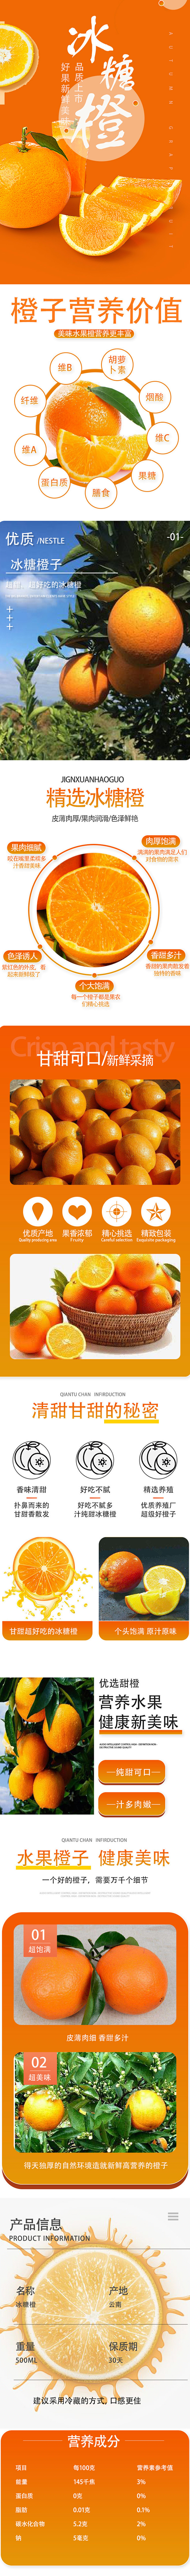 水果橙子详情页